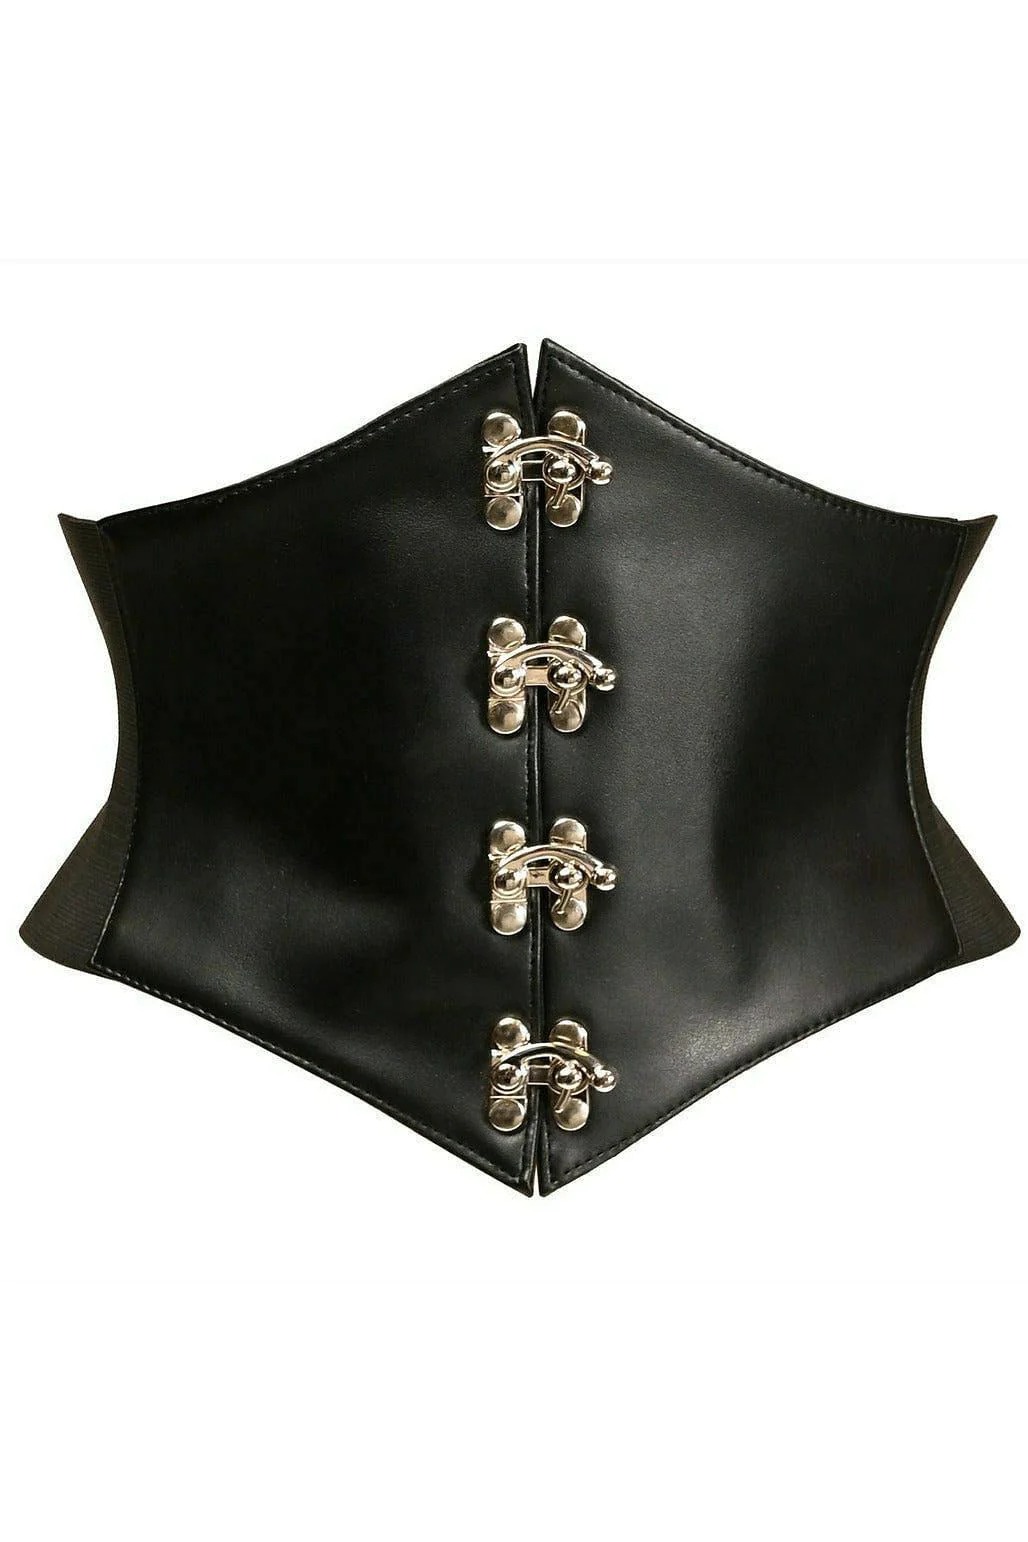 Adult Plus Size Black Faux Leather Corset Belt Cincher